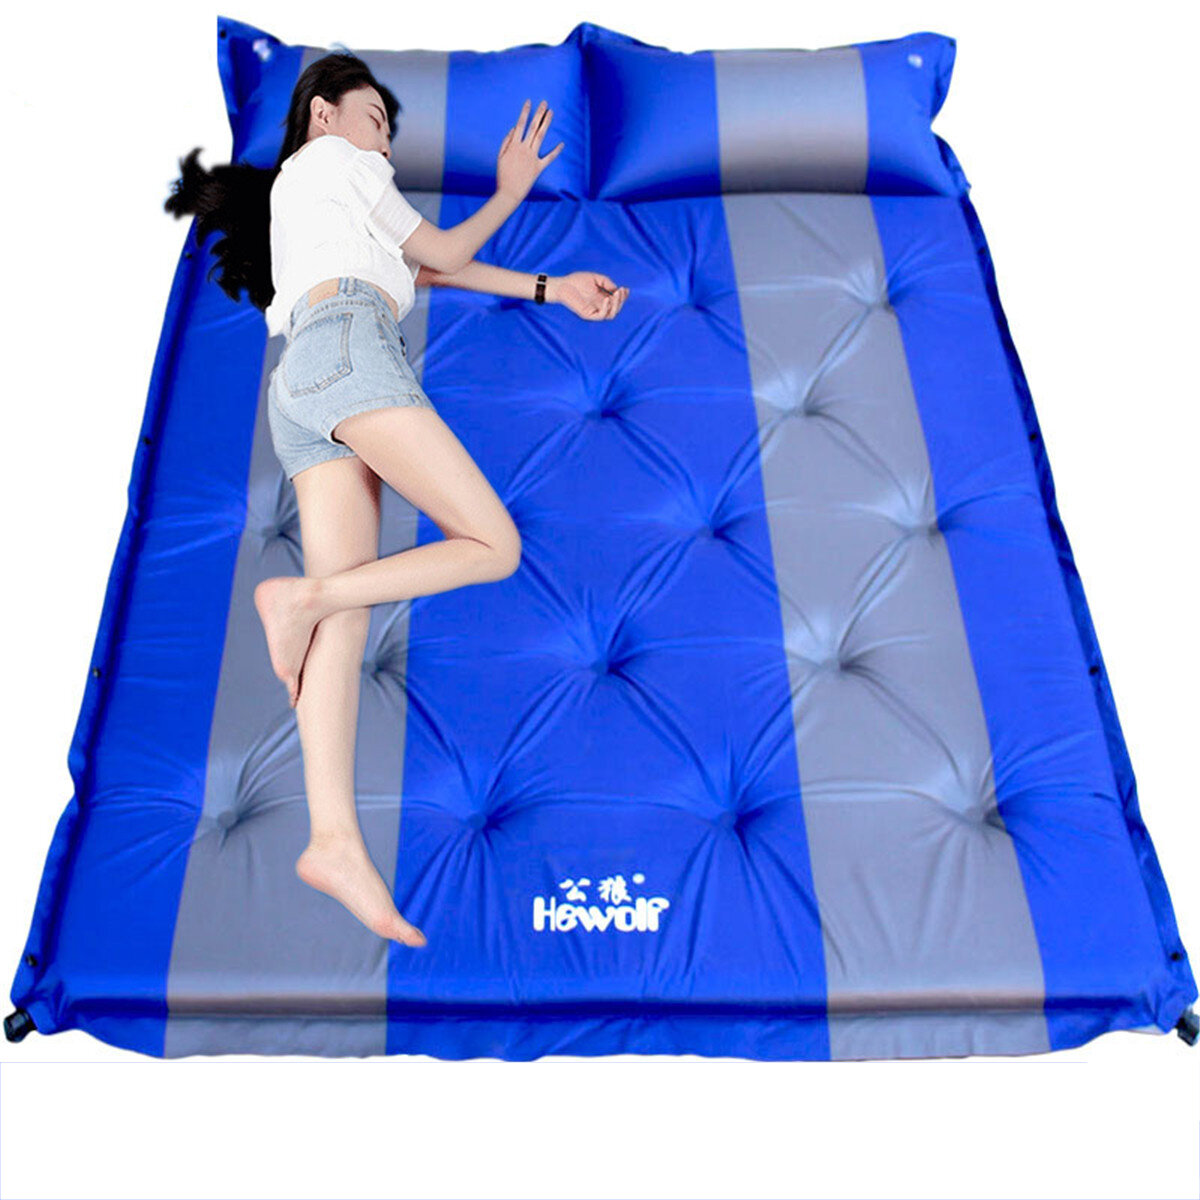 Automatische aufblasbare Luftmatratzen für 2 Personen, ideal für Camping, Wandern und Schlafen im Zelt.